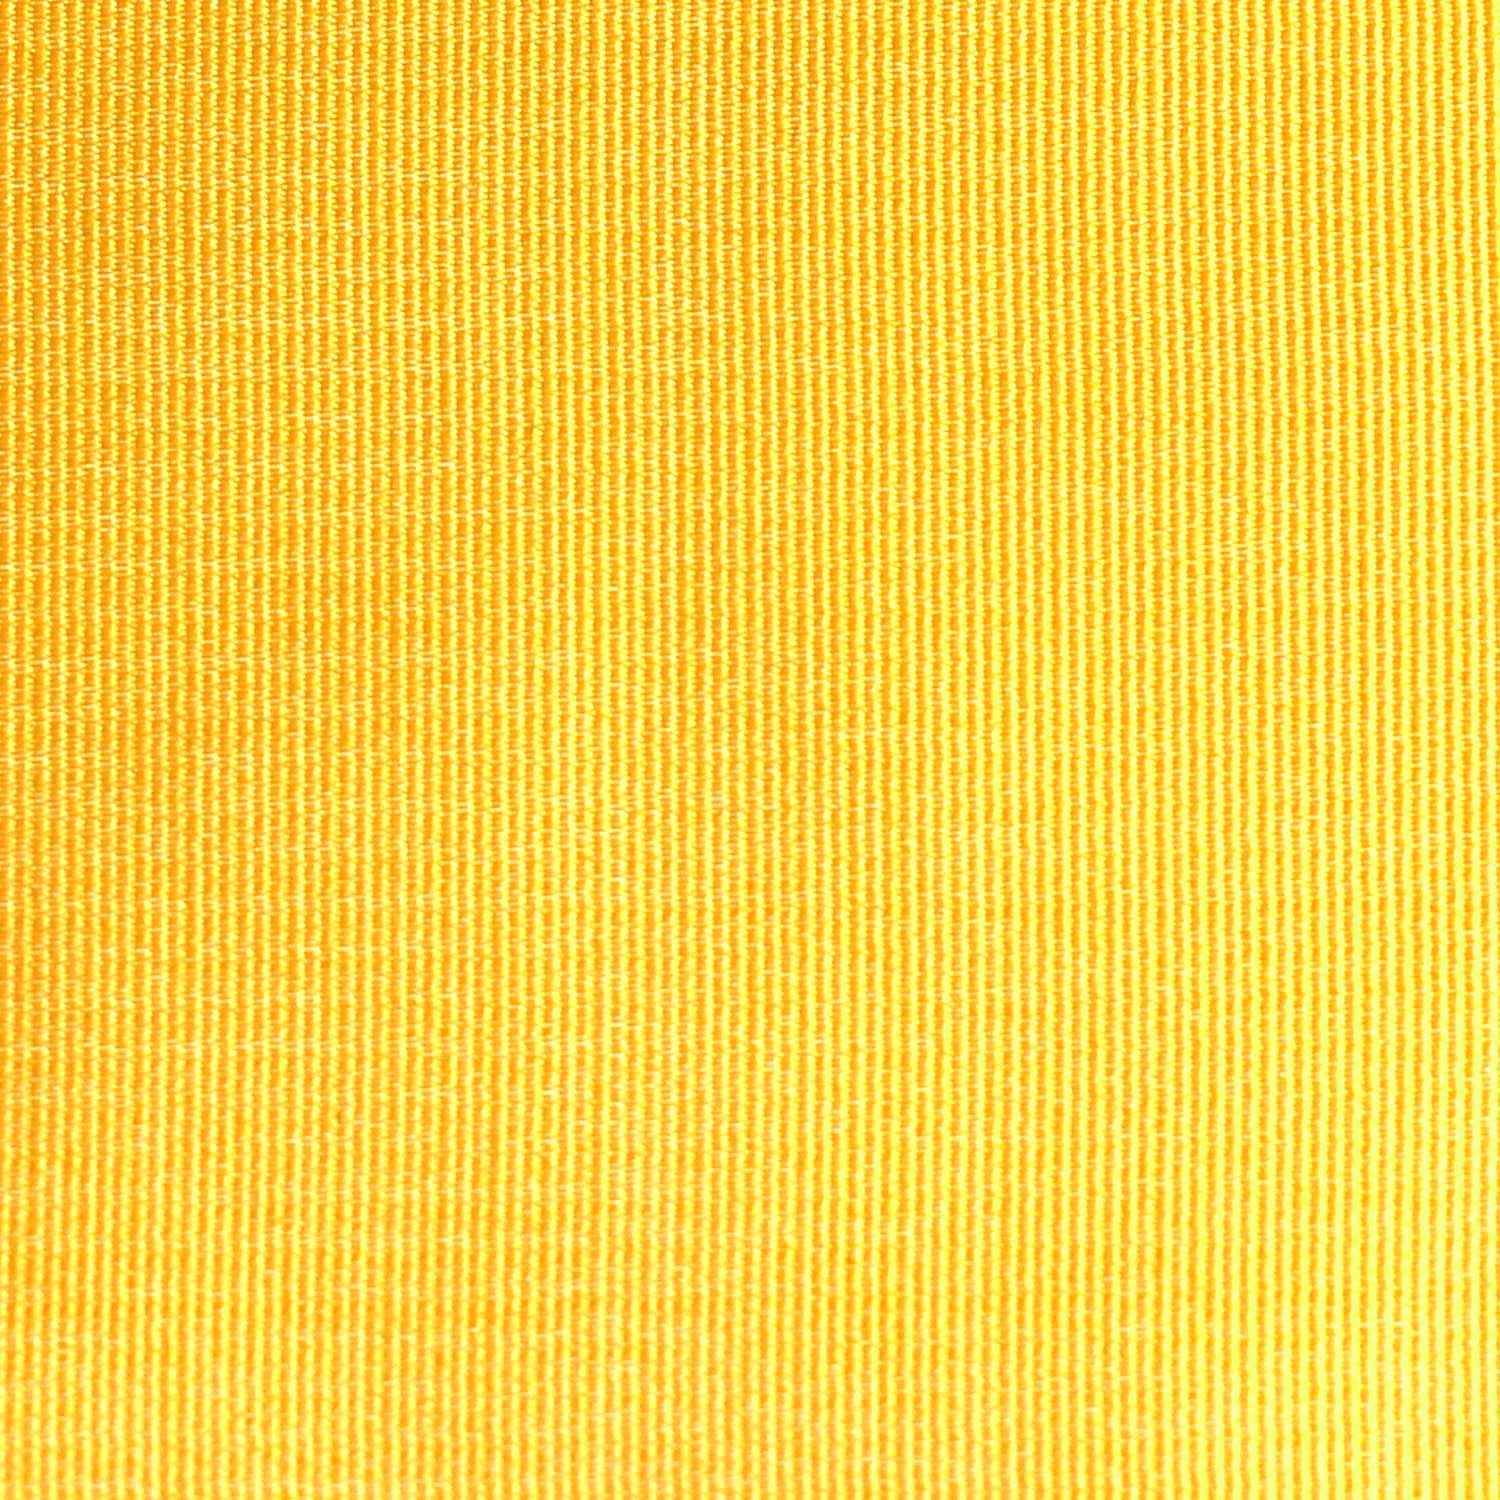 Banana Yellow Fabric Skinny Tie X079